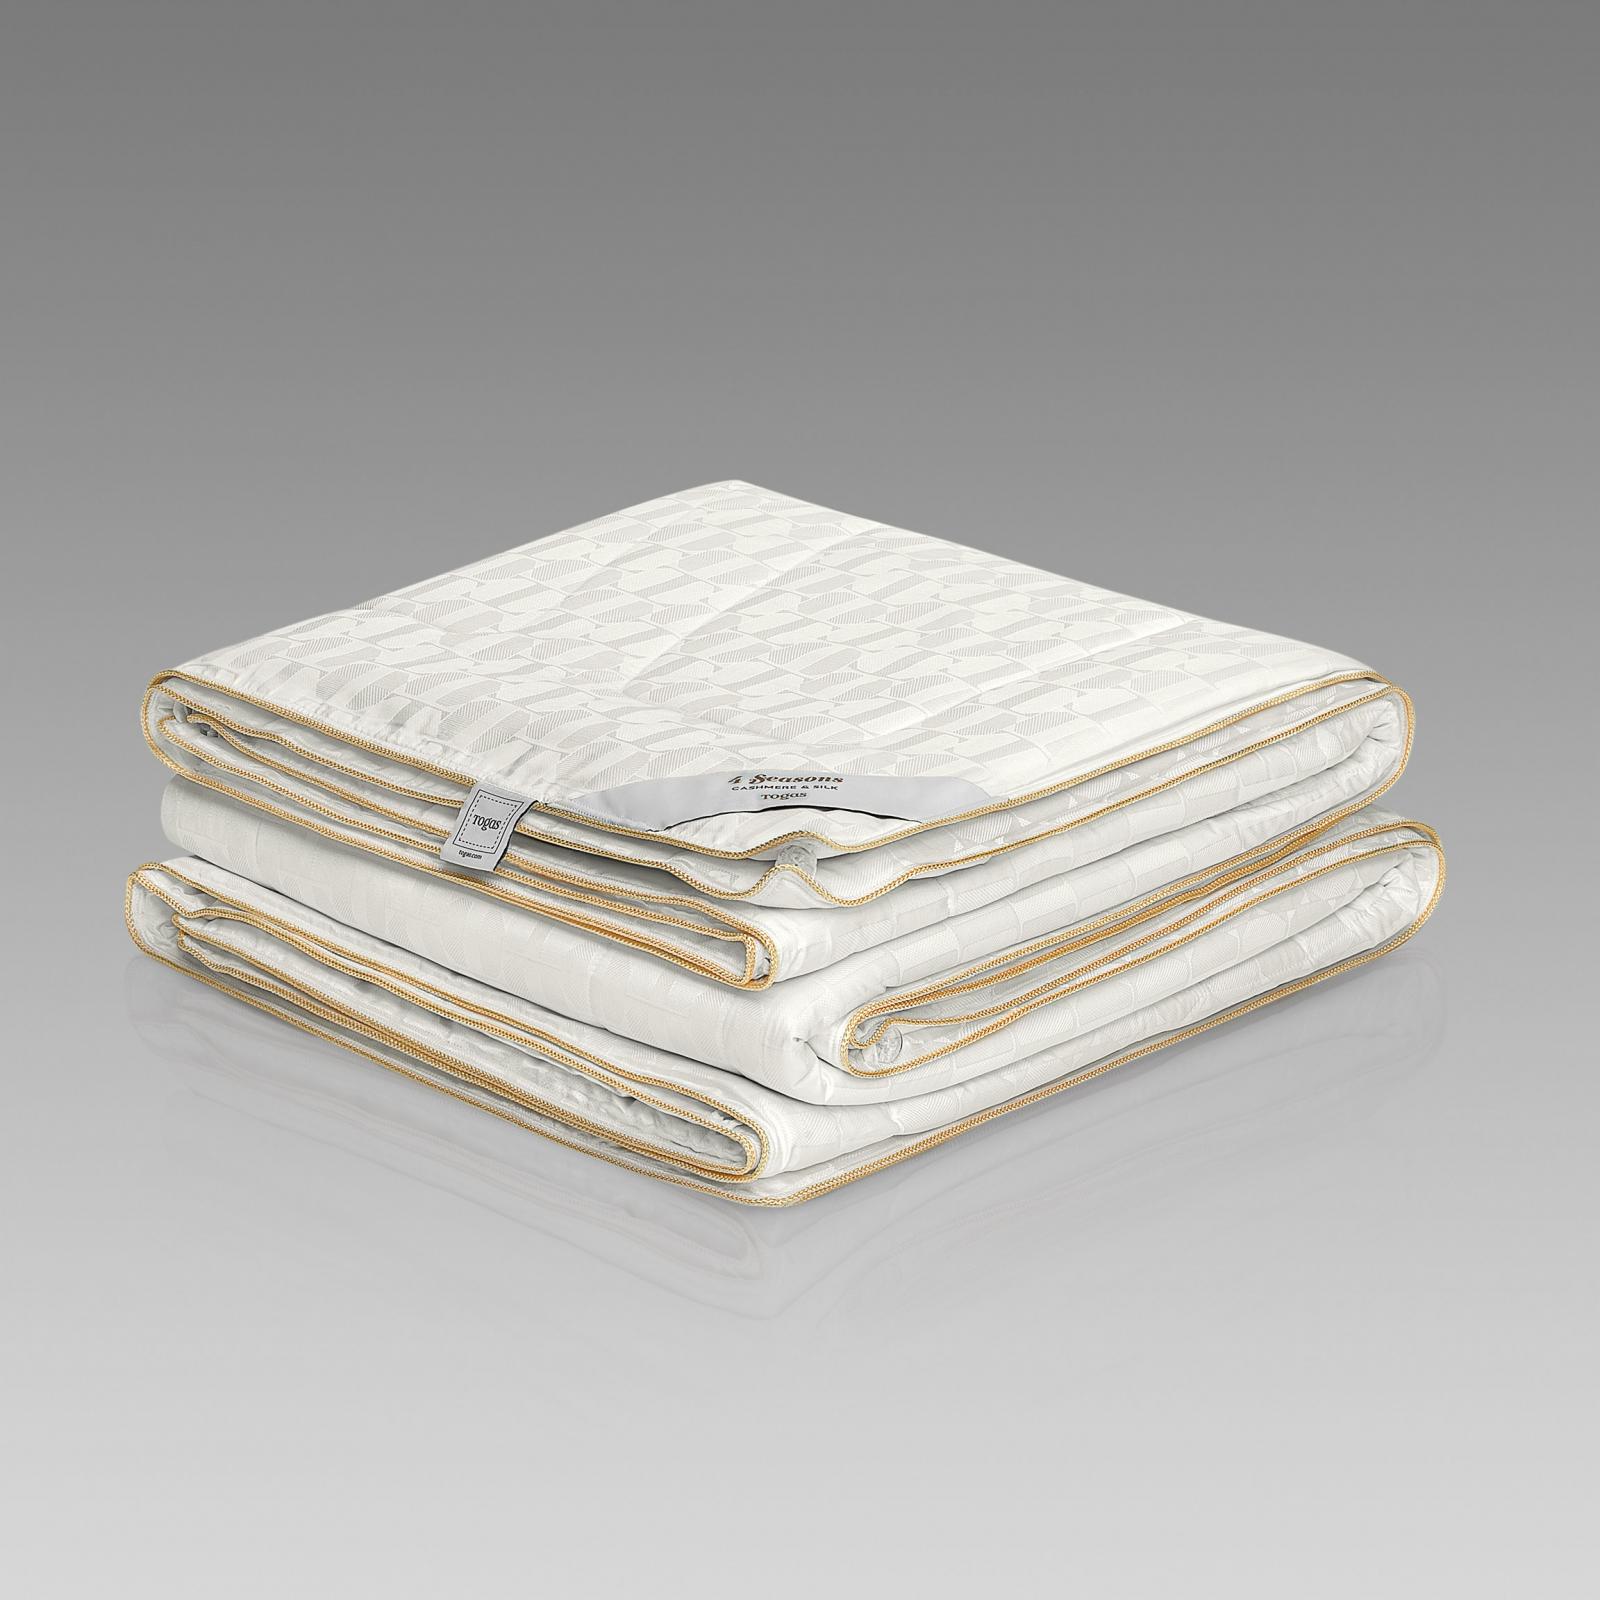 Одеяло Togas 4 сезона белое 140х200 см (20.04.40.0000) одеяло togas иннотекс 220x240